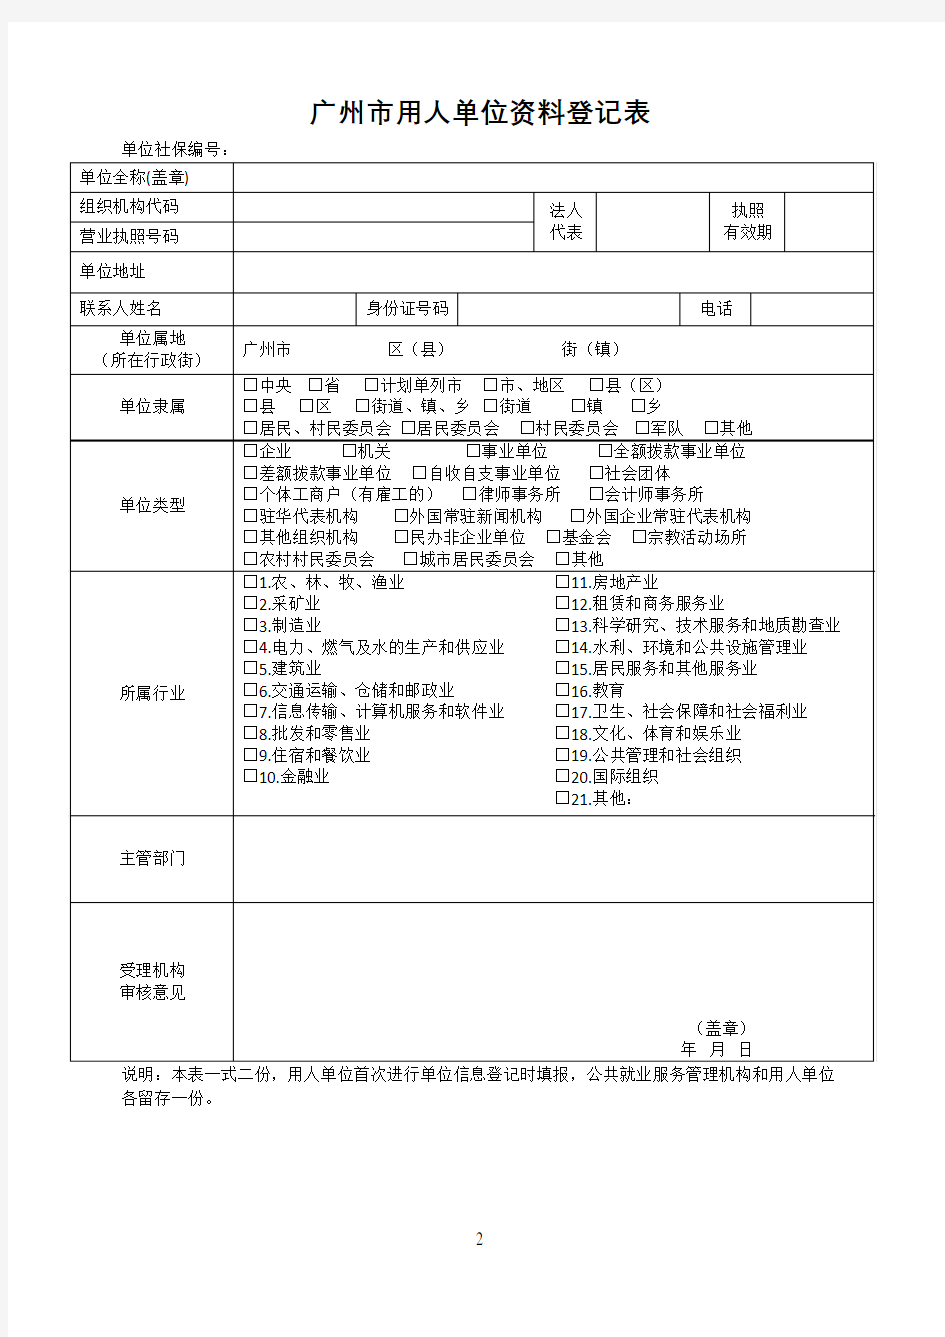 广州市用人单位资料登记表